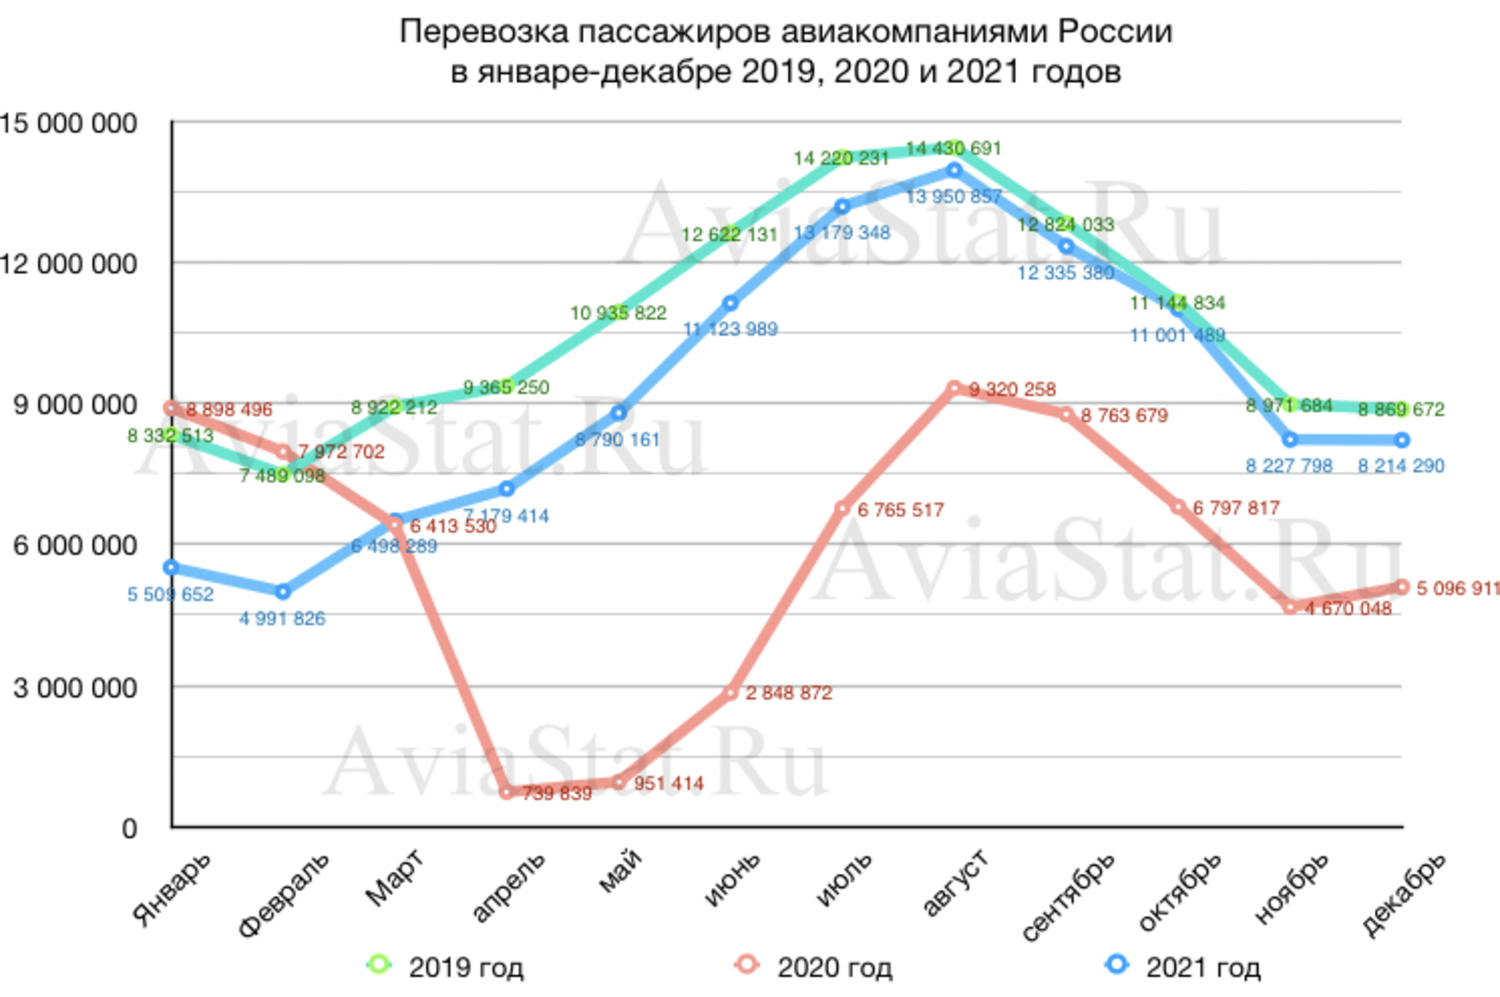 Количество перевезенных пассажиров человек. Авиаперевозки пассажиров по годам в России. График пассажирских перевозок. Авиаперевозки России по годам. Динамика пассажиропотока авиакомпаний России до 2021 года.